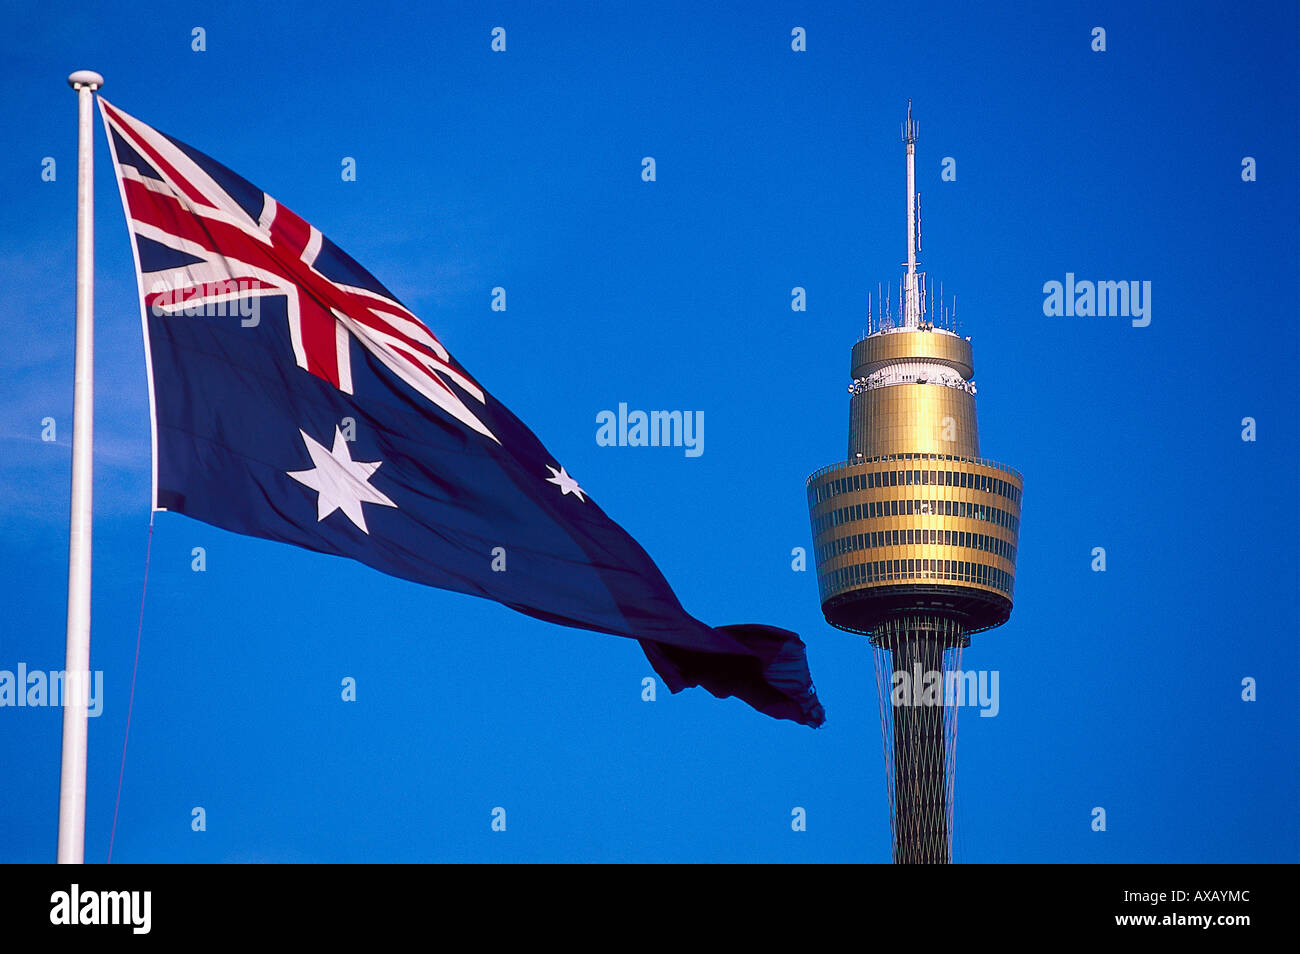 Sydney Tower, australische Flagge, Sydney, NSW Australien Stock Photo